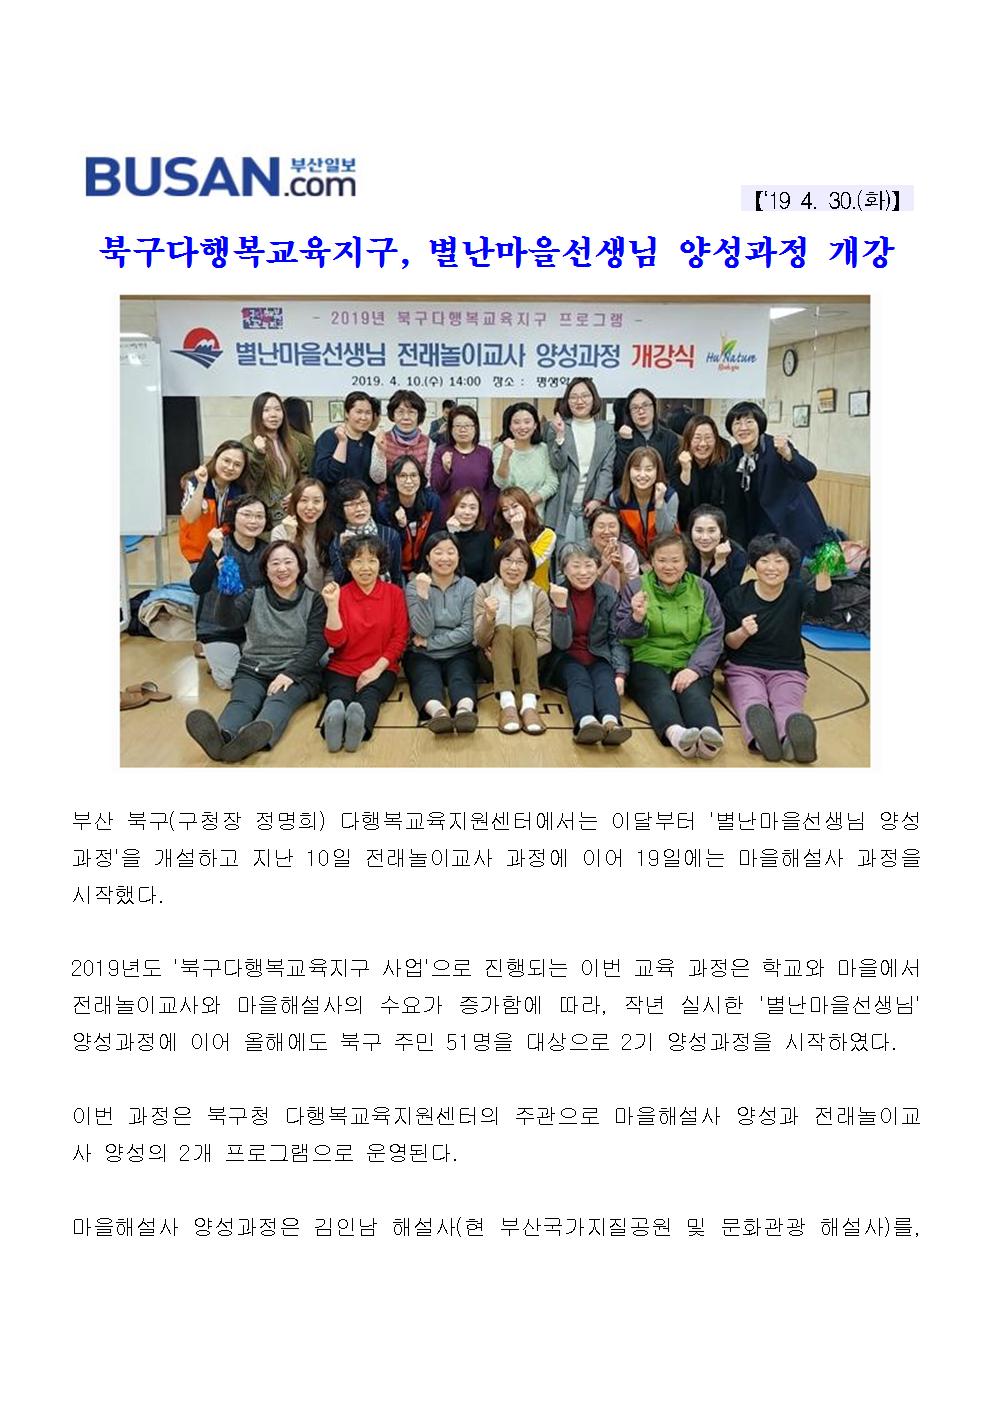 북구다행복교육지구, 별난마을선생님 양성과정 개강(3-1-9)